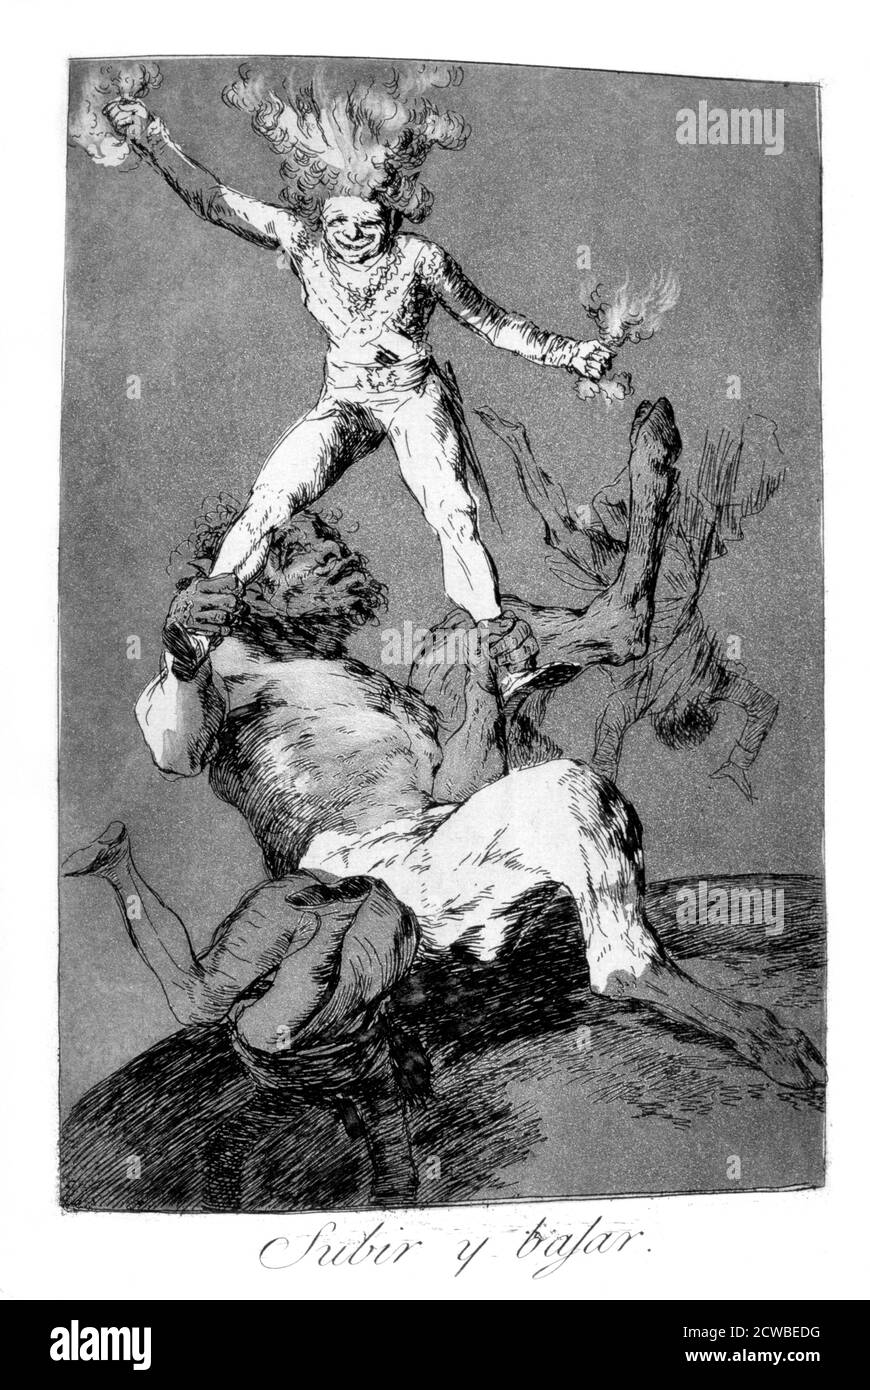 A Rise and to Fall', 1799 artista: Francisco Goya. Piastra 56 di "Los Caprichos". Los Caprichos sono un set di 80 stampe in acquatint e acquaforte create dall'artista spagnolo Francisco Goya nel 1797 e nel 1798, e pubblicate come album nel 1799. Foto Stock